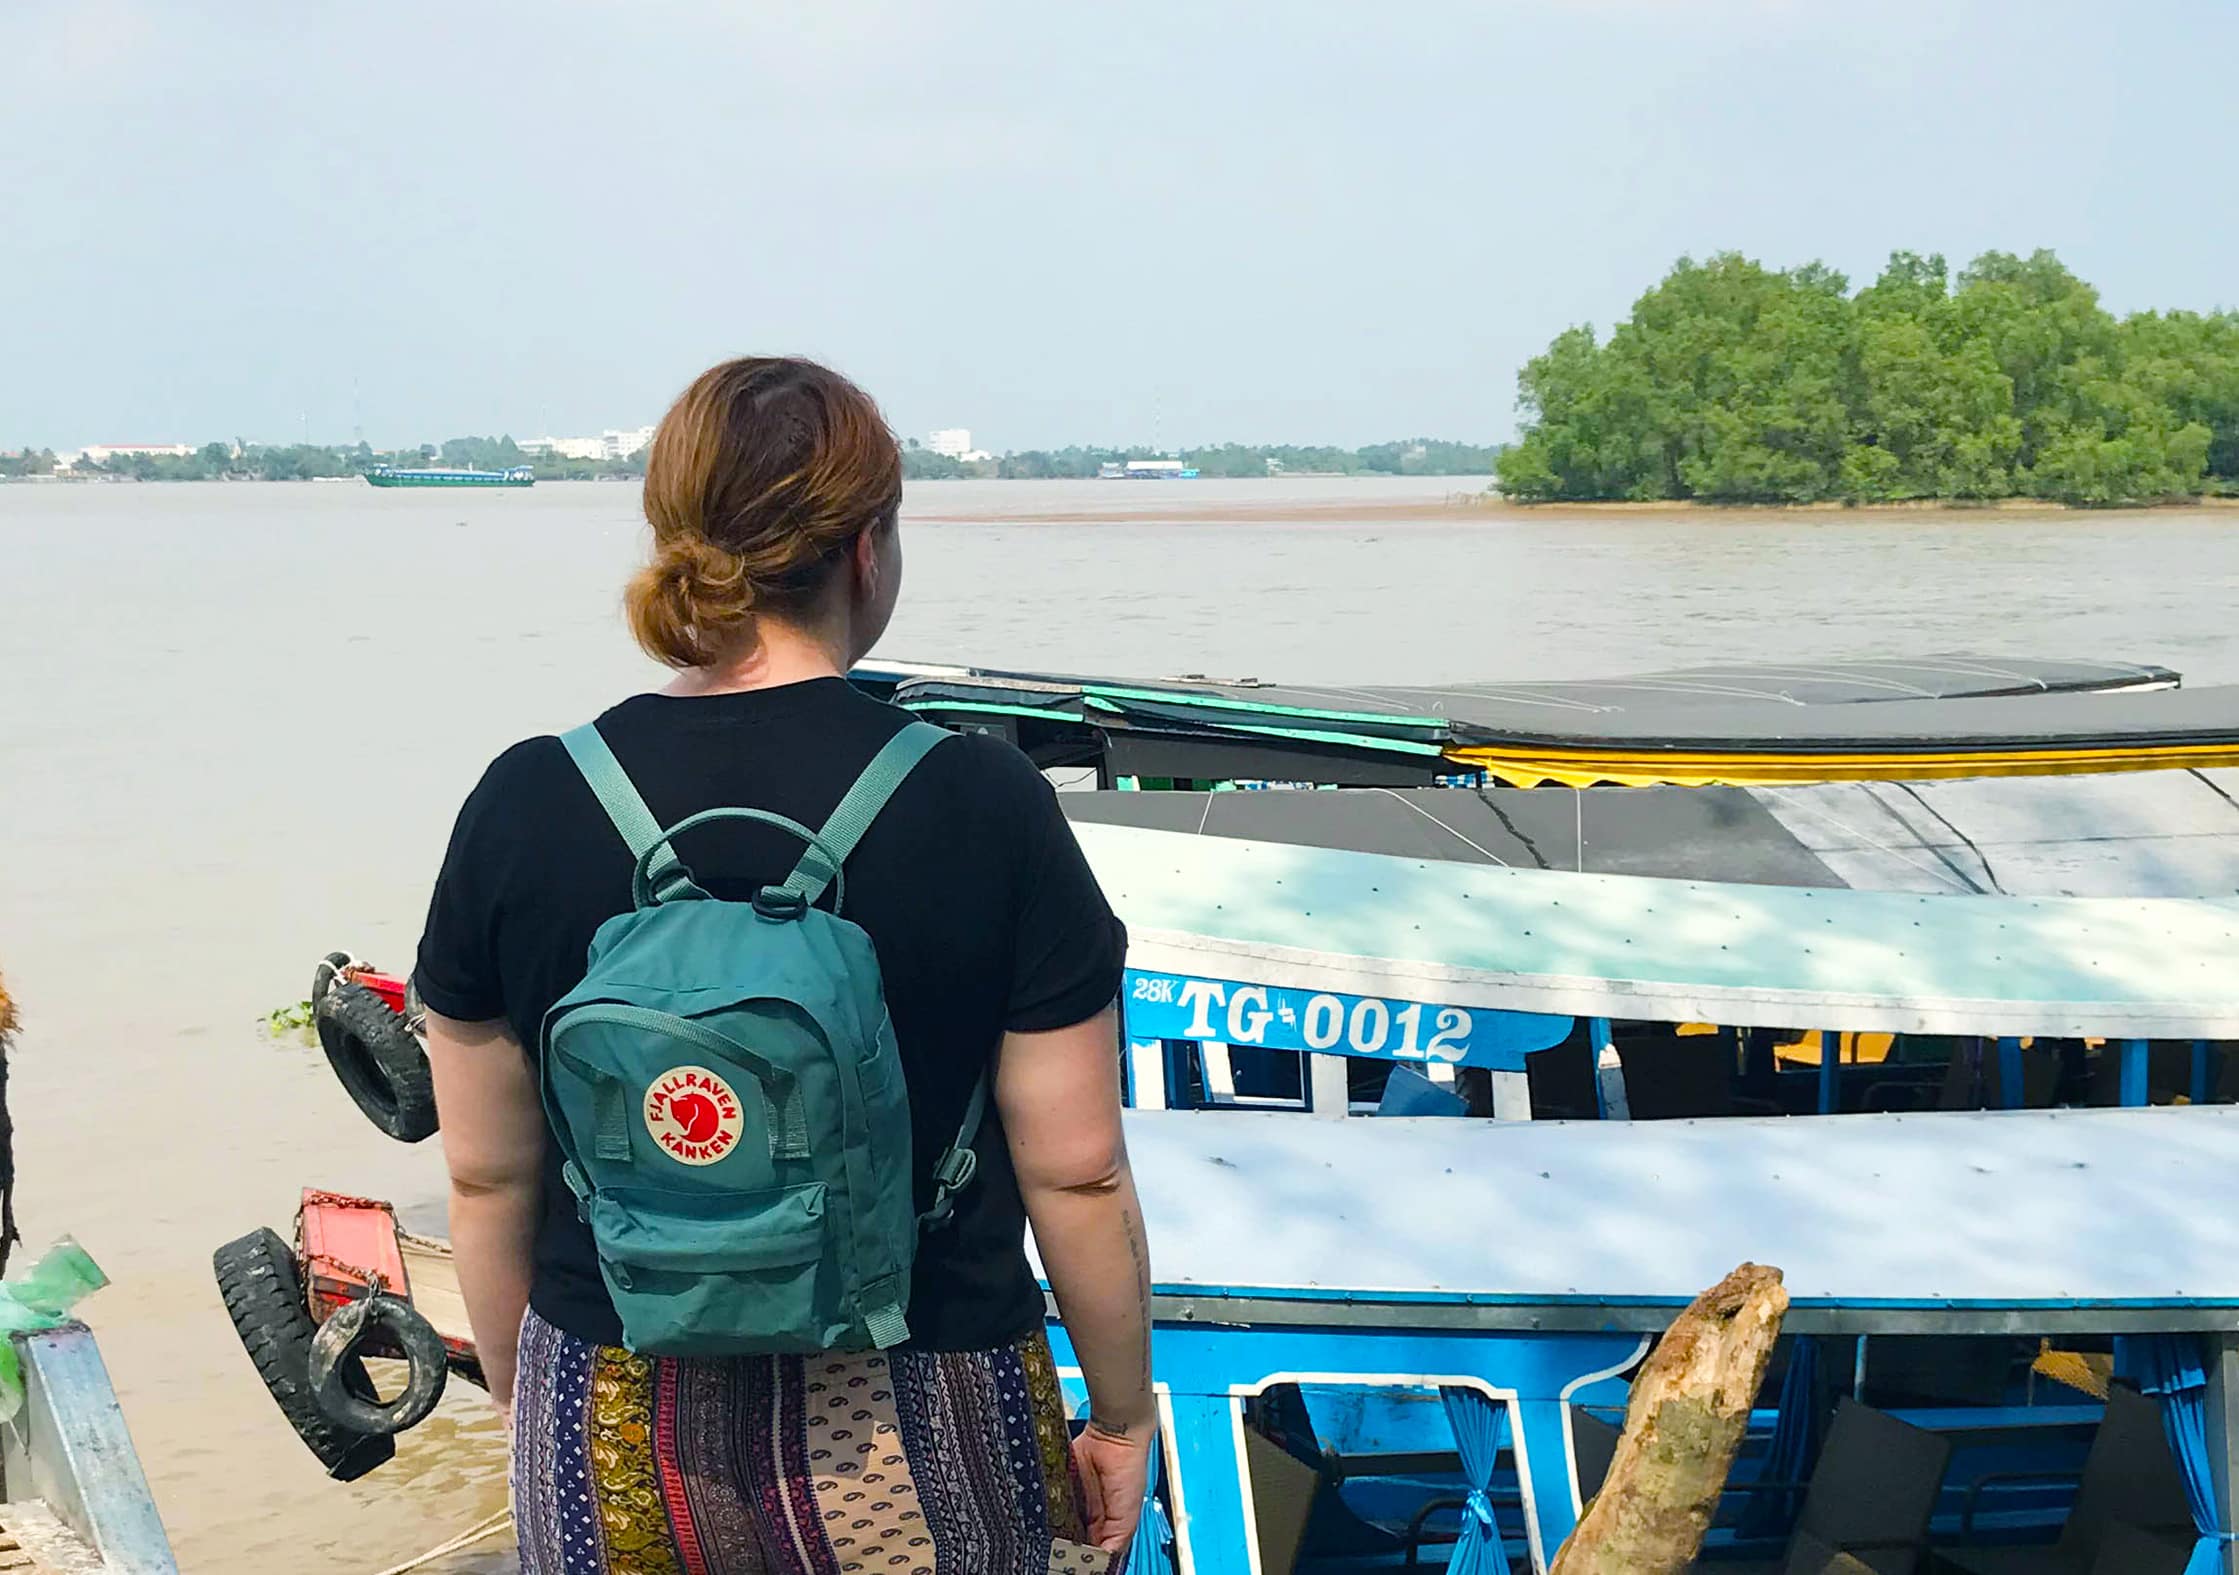 Fjallraven Kanken Mini Mekong Delta